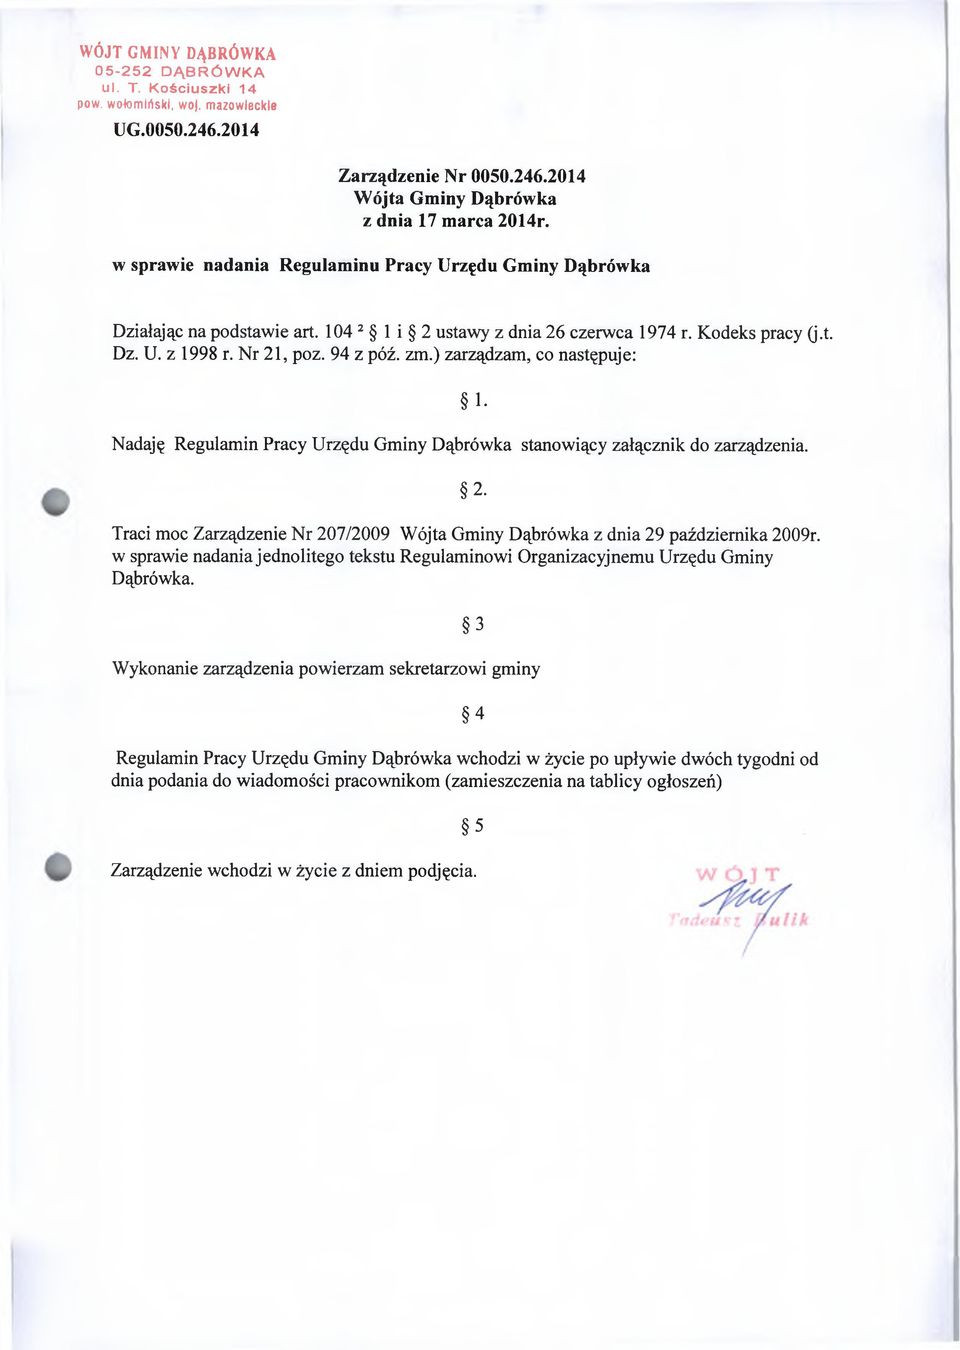 ) zarządzam, co następuje: Nadaję Regulamin Pracy Urzędu Gminy Dąbrówka stanowiący załącznik do zarządzenia. 1. 2. Traci moc Zarządzenie Nr 207/2009 Wójta Gminy Dąbrówka z dnia 29 października 2009r.